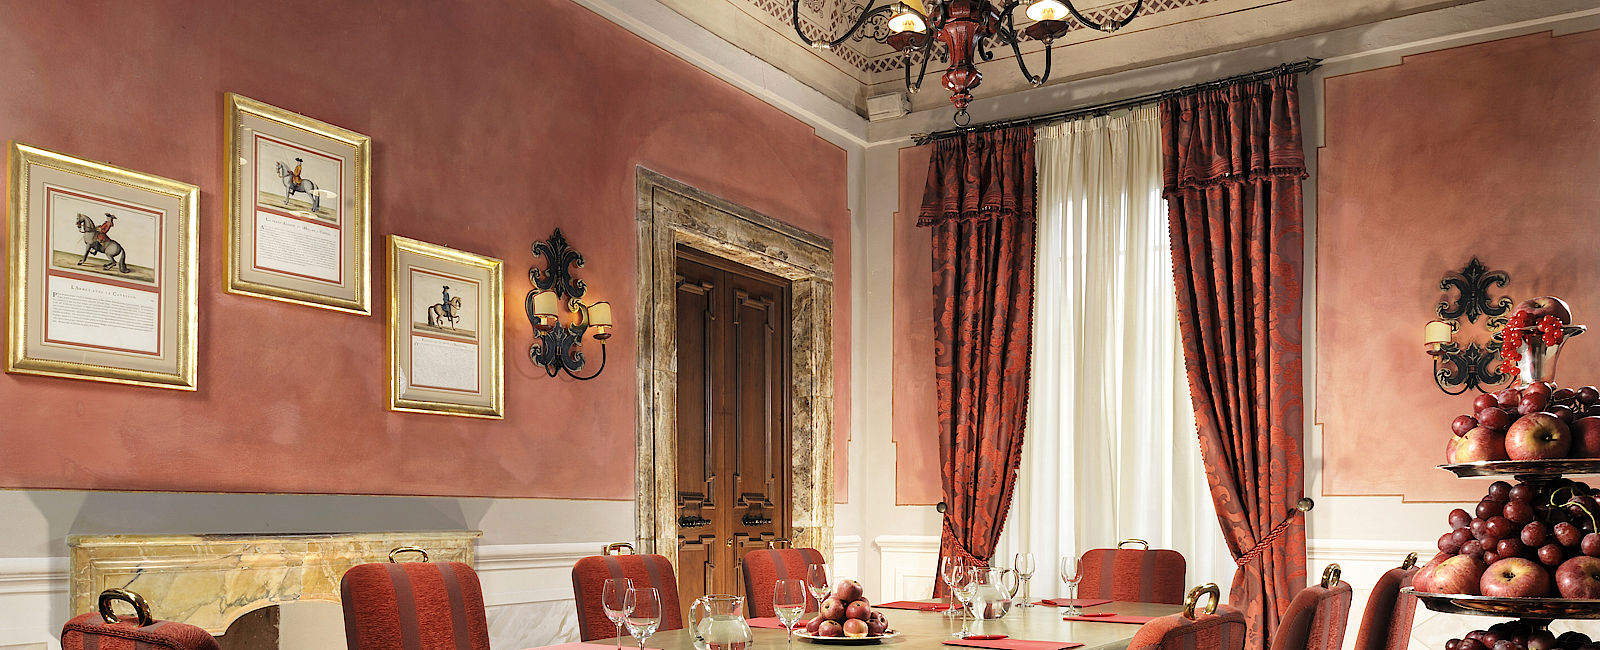 HOTEL TIPPS
 Grand Hotel Continental 
 Einziges Fünf-Sterne Luxushotel in Siena 